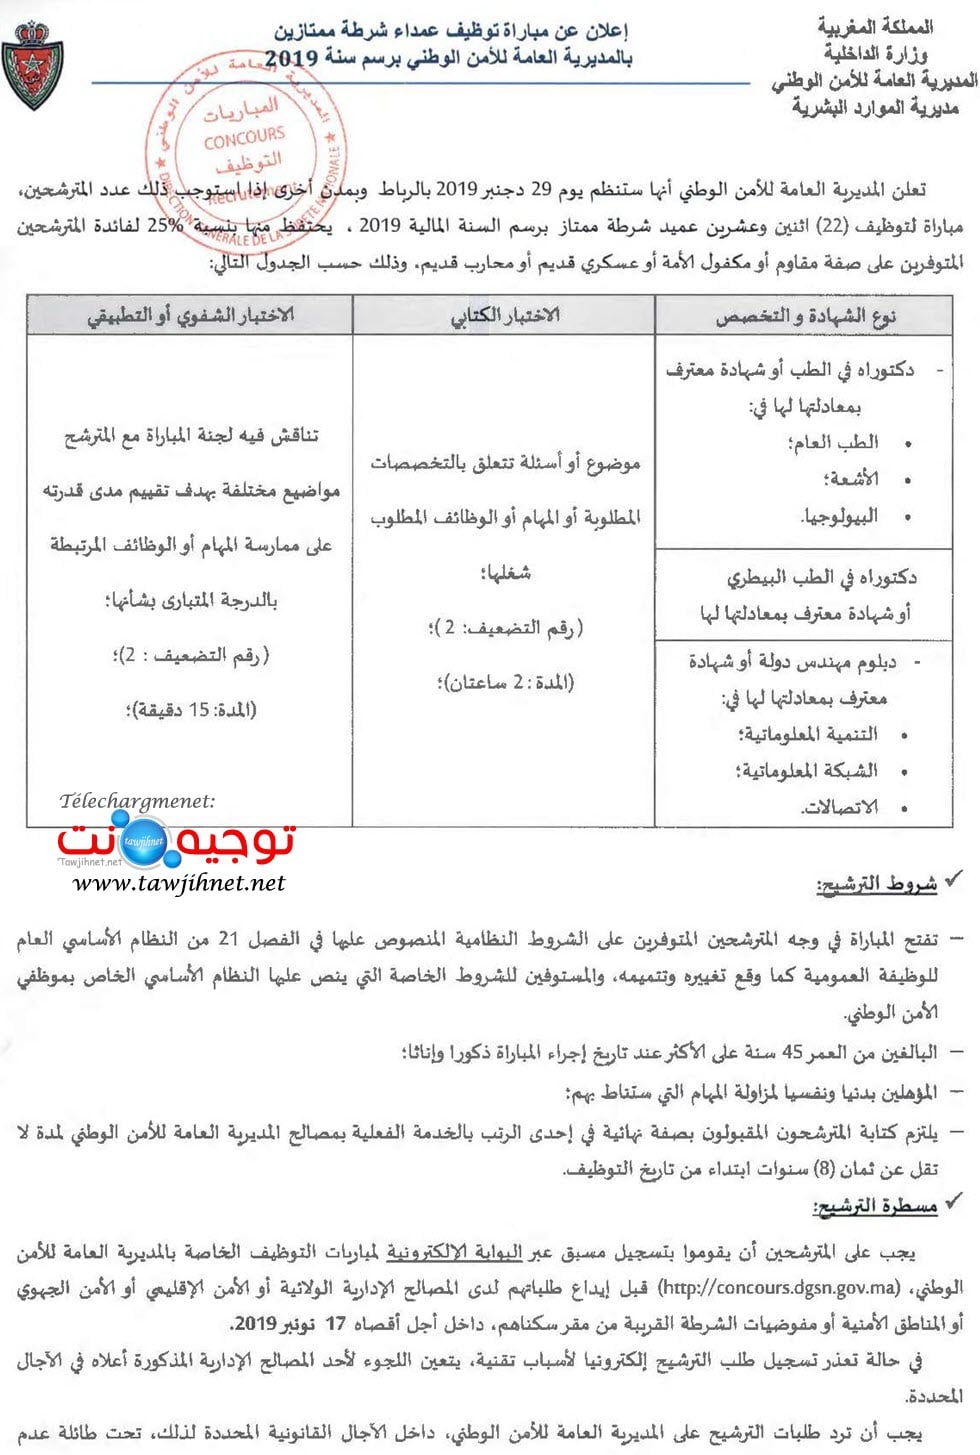 مباراة توظيف 22 عميد شرطة ممتاز Commissaires de police principal maroc 2019